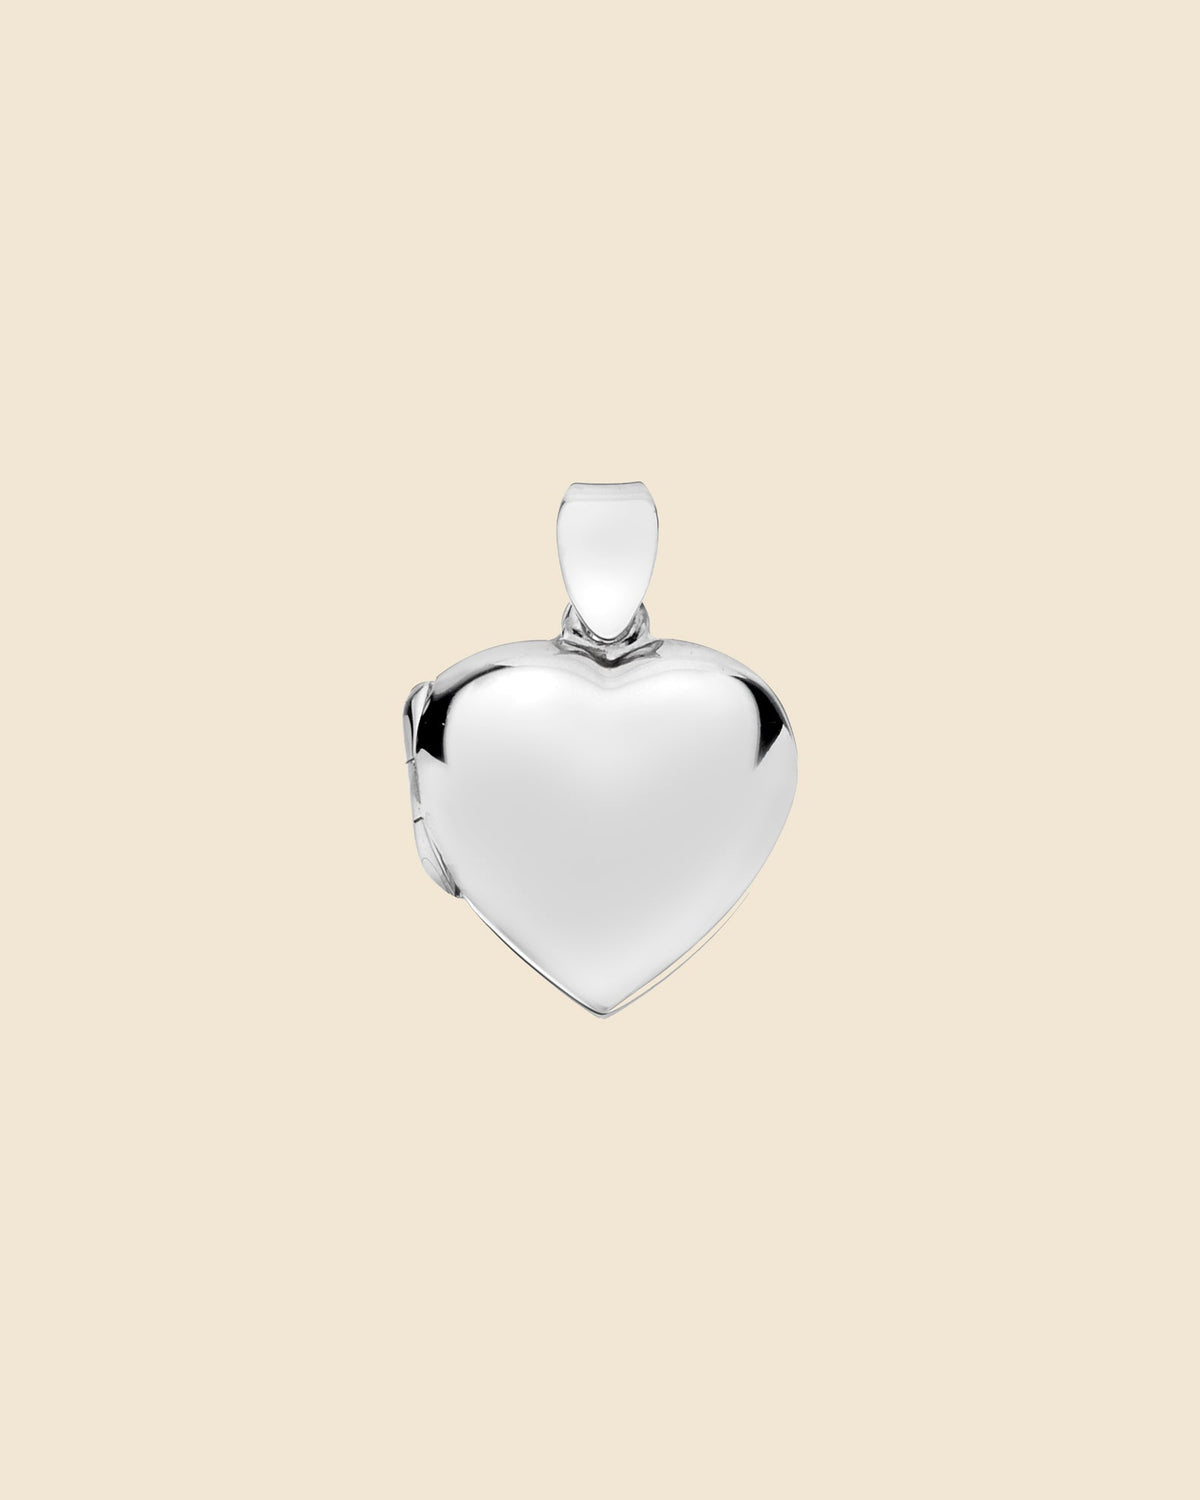 Sterling Silver Plain Heart Locket